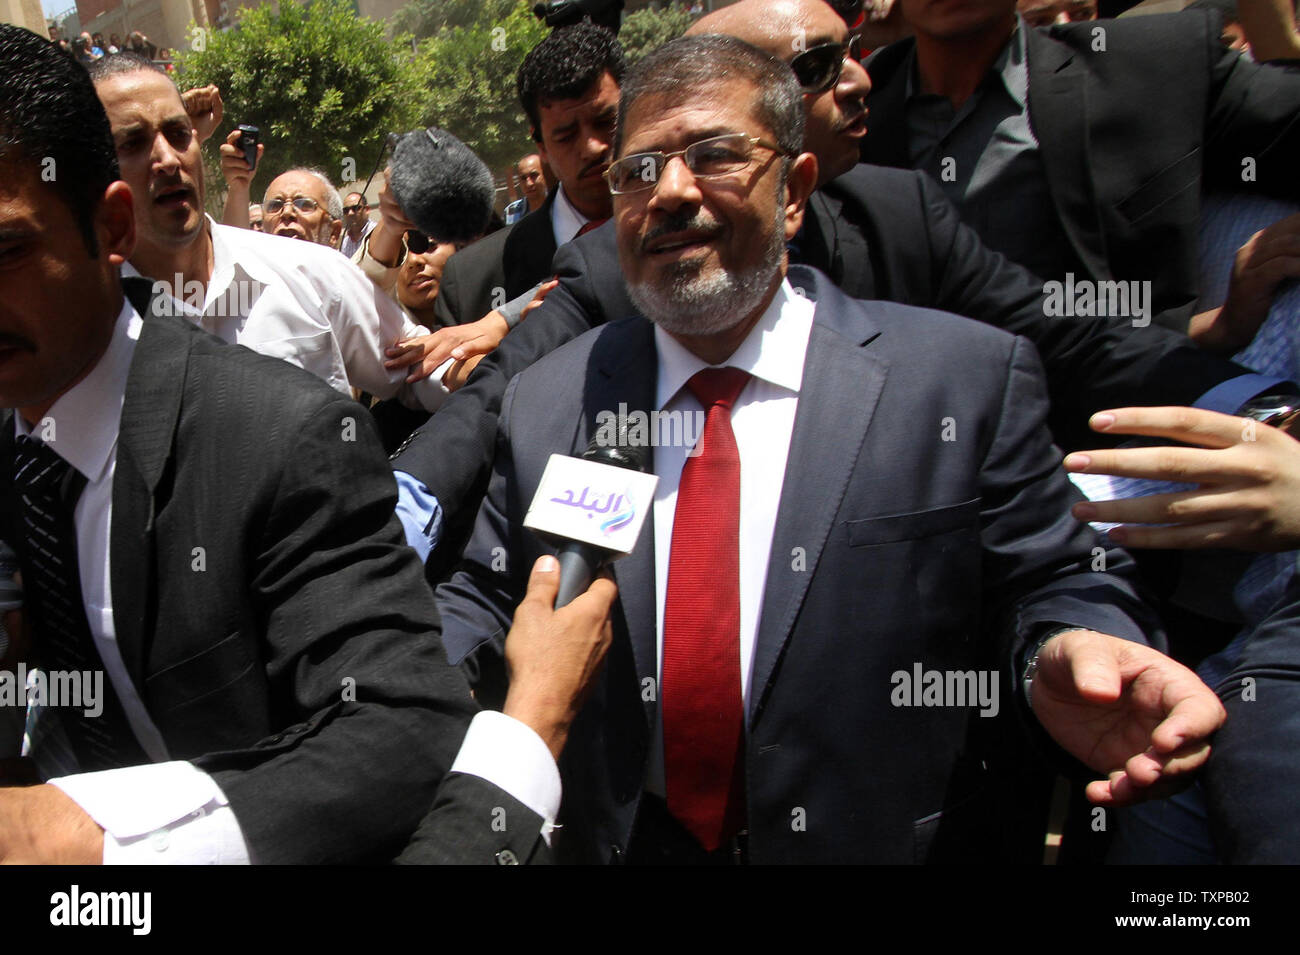 El candidato presidencial Mohamed Morsy(C) de la Hermandad Musulmana llega a depositar su voto en una mesa electoral en un colegio de Al-Sharqya, a 60 km (37 millas) al noreste de El Cairo en Egipto, 16 de junio de 2012. Egipto la primera elección presidencial libre concluye este fin de semana en una segunda vuelta entre los candidatos de la Hermandad Musulmana, Mohamed Morsy y Ahmed Shafik, último primer ministro del derrocado líder egipcio Hosni Mubarak. UPI/Ahmed Jomaa Foto de stock